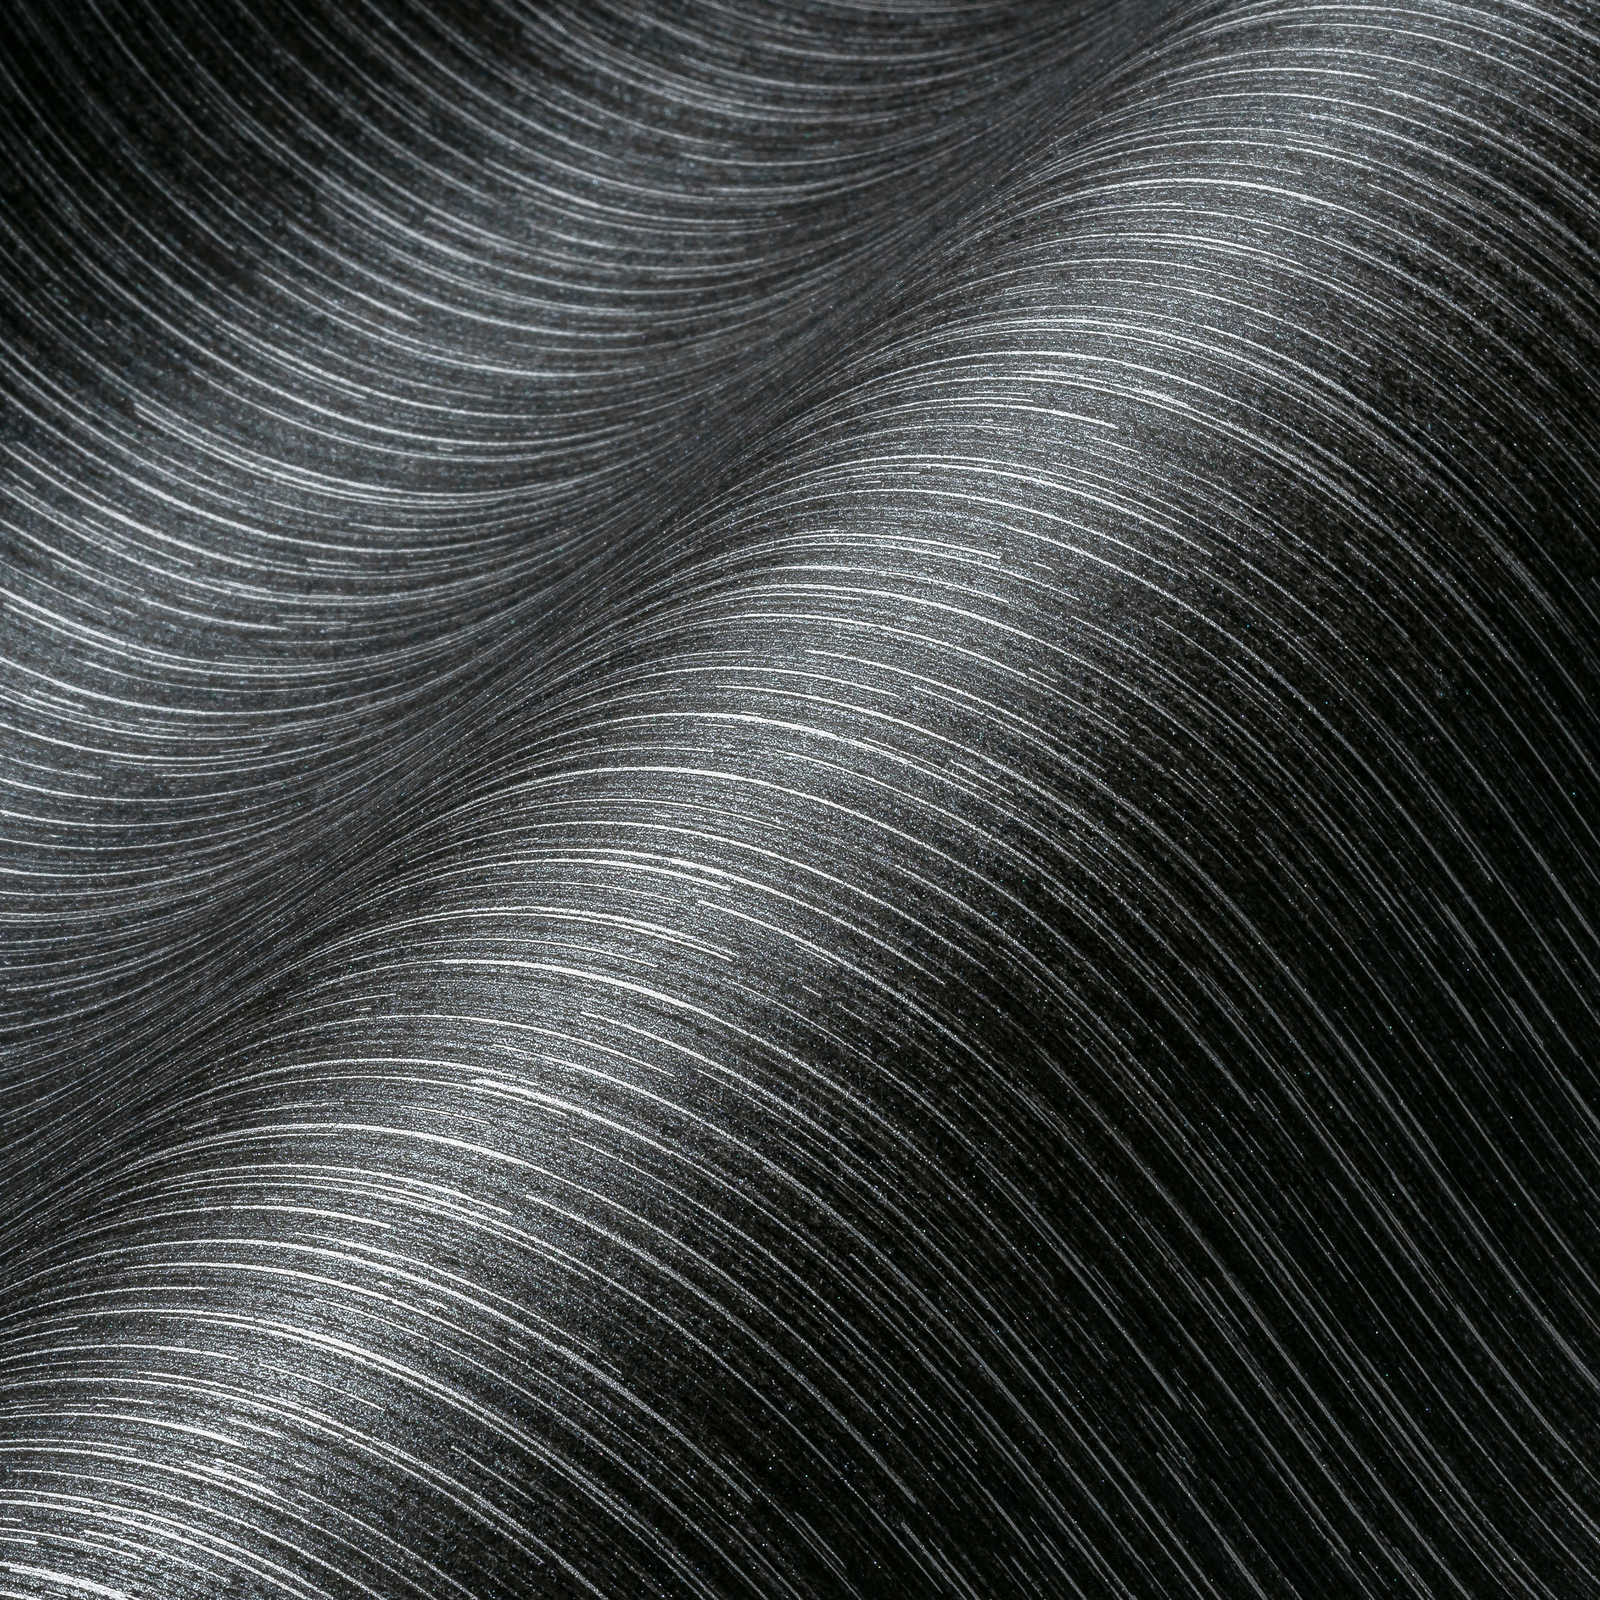             Antraciet behang met zilveren accenten & lijnenspel - zwart, metallic
        